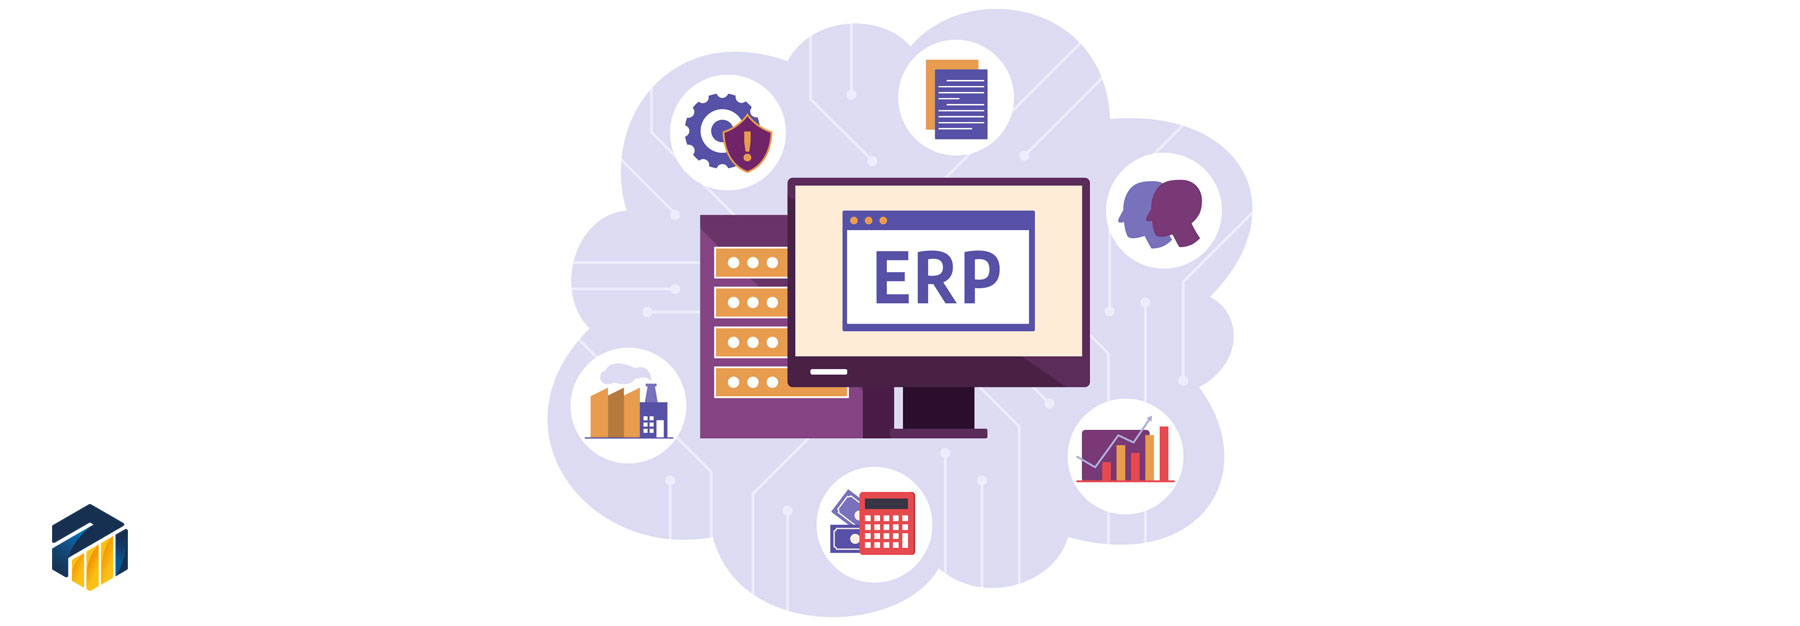 همه چیز درباره ERP | همه چیز در مورد erp | Erp مخفف چیست | Erp ایرانی | نرم افزار های erp